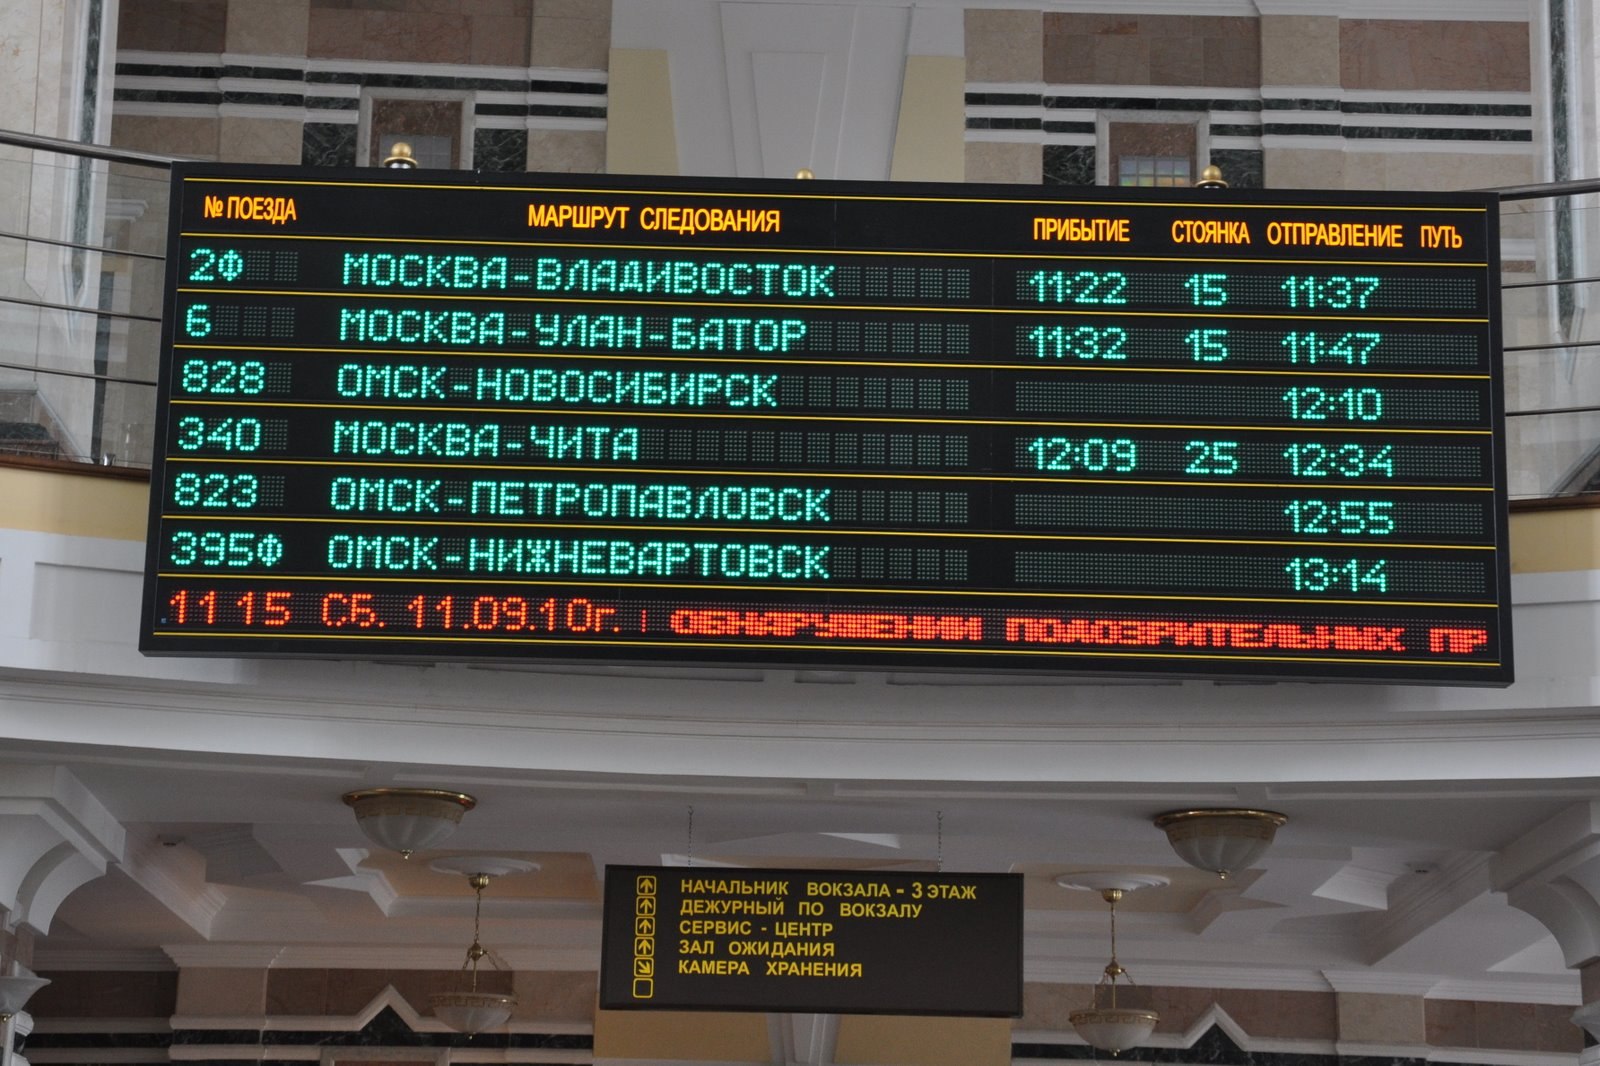 Расписание поезда в вагоне. Расписание поезда Москва Владивосток. Расписание поездов табло. Табло на ЖД вокзале.